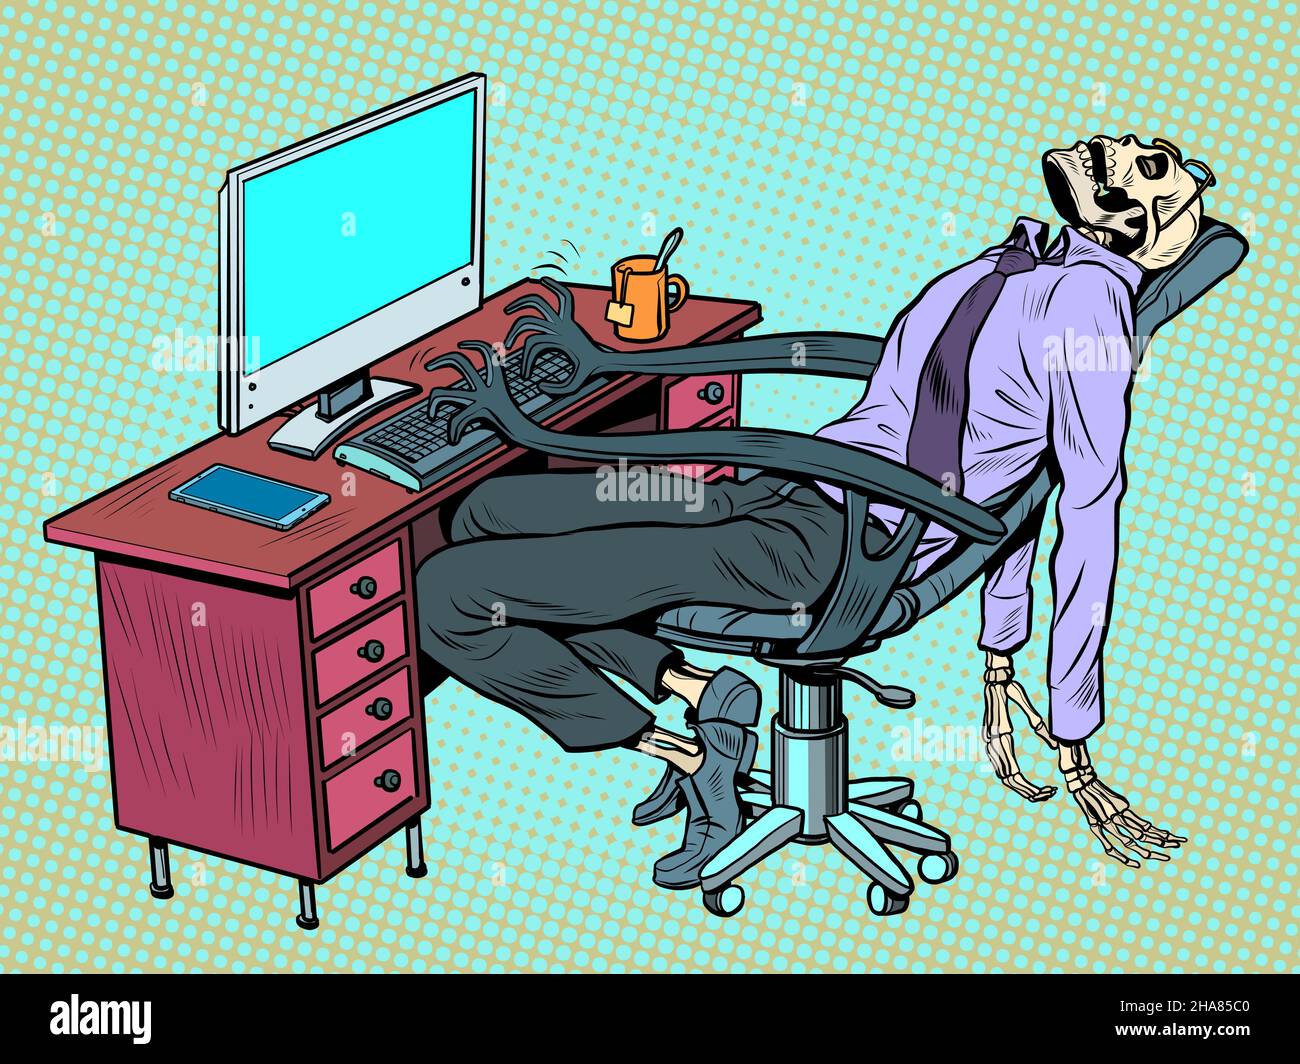 El hombre de negocios murió en la oficina, pero la silla del robot sigue trabajando para él en la computadora Ilustración del Vector